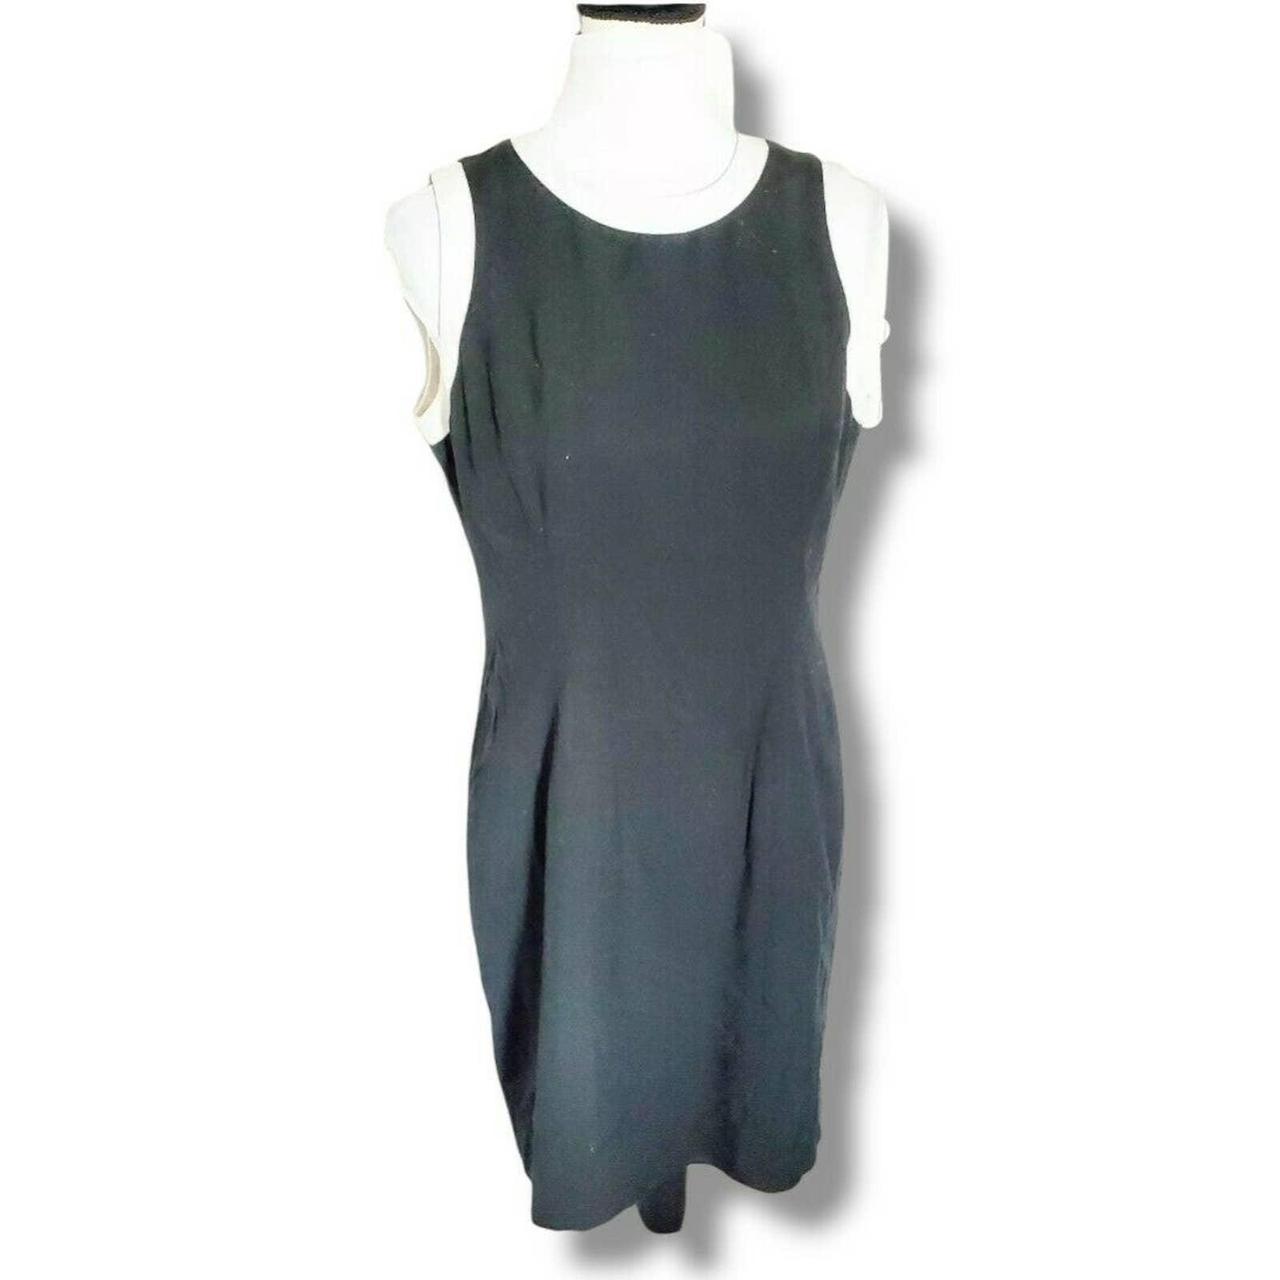 Vintage Ann Taylor 60s Mod Sheath Dress Black White... - Depop